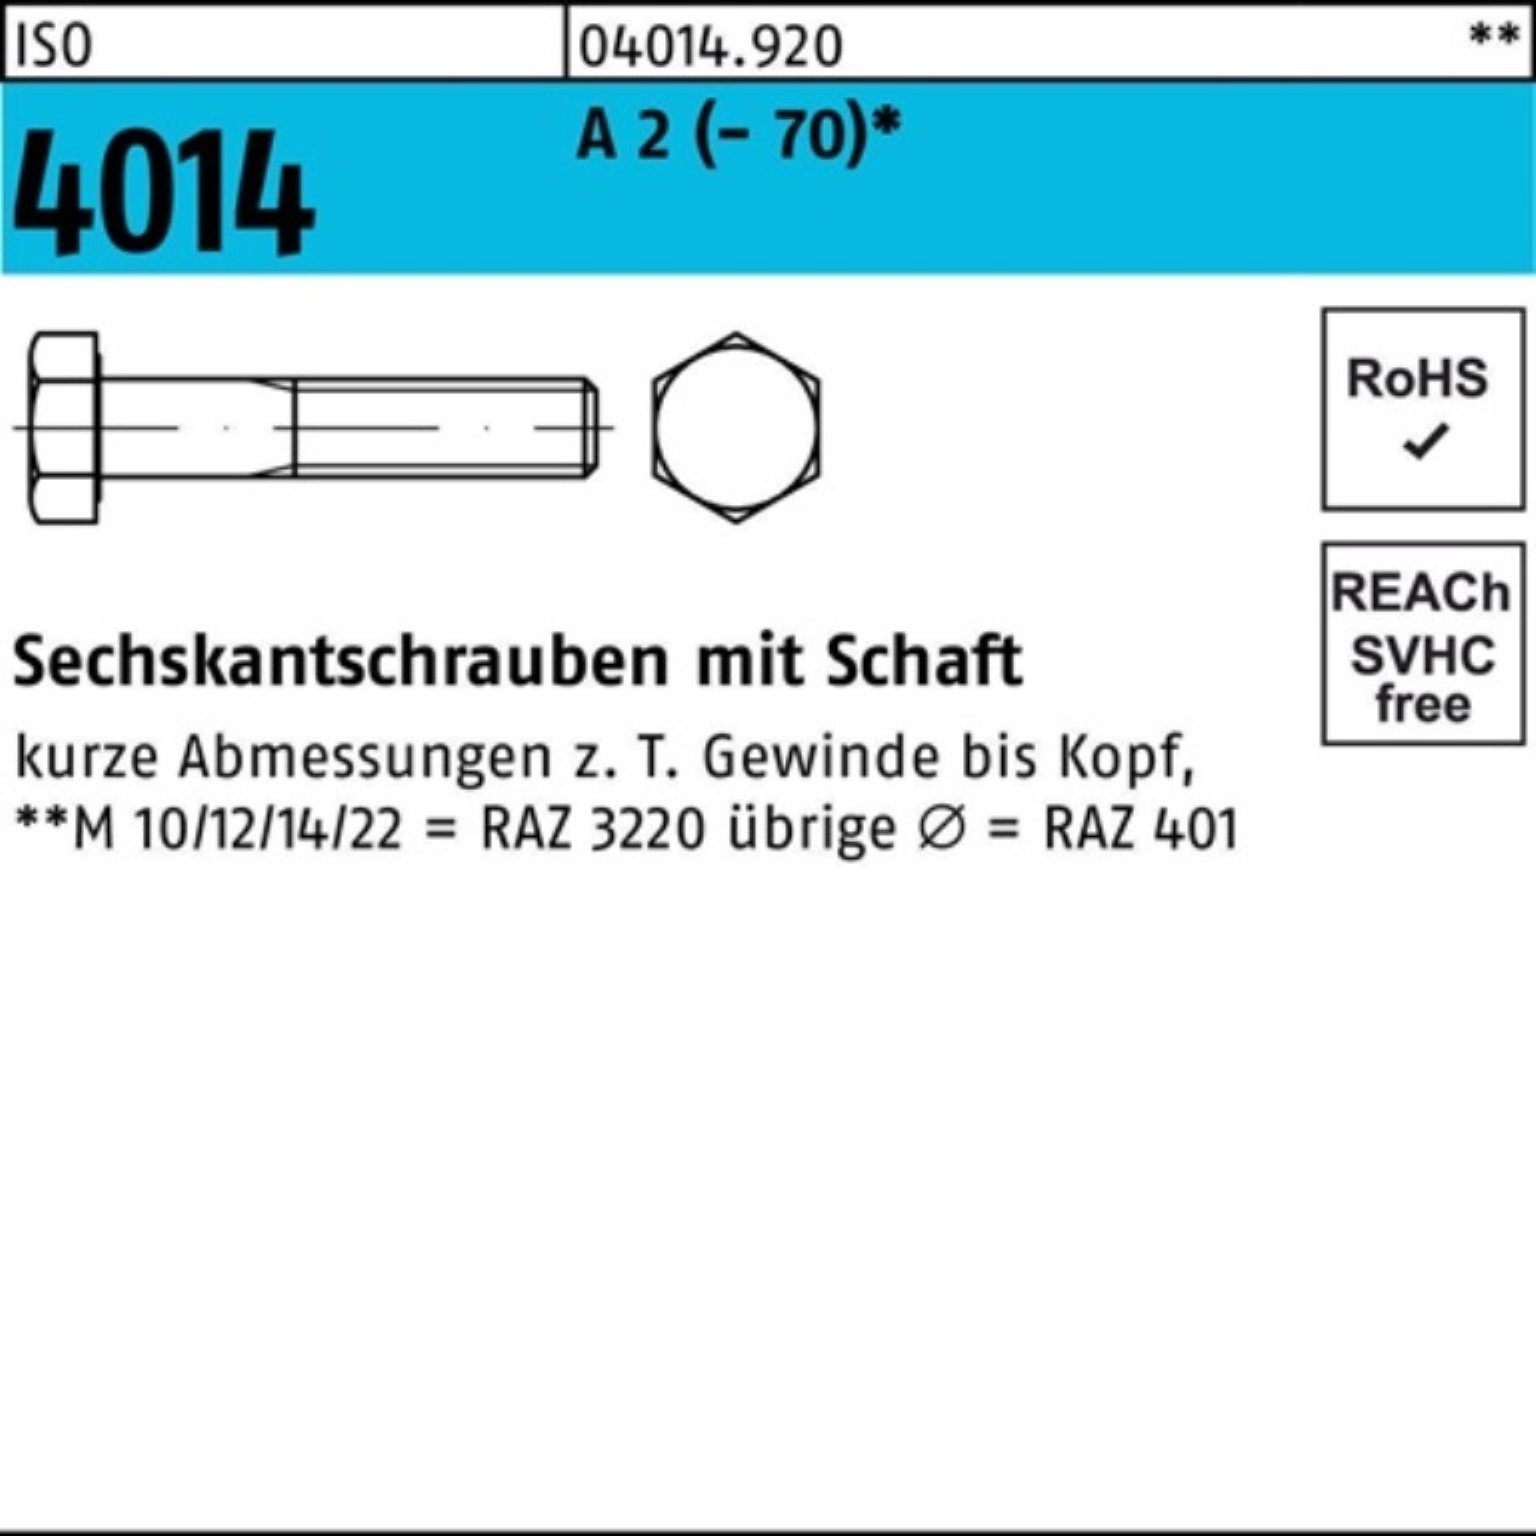 1 ISO Schaft (70) Pack St Sechskantschraube A Sechskantschraube Bufab 130 100er M24x 2 4014